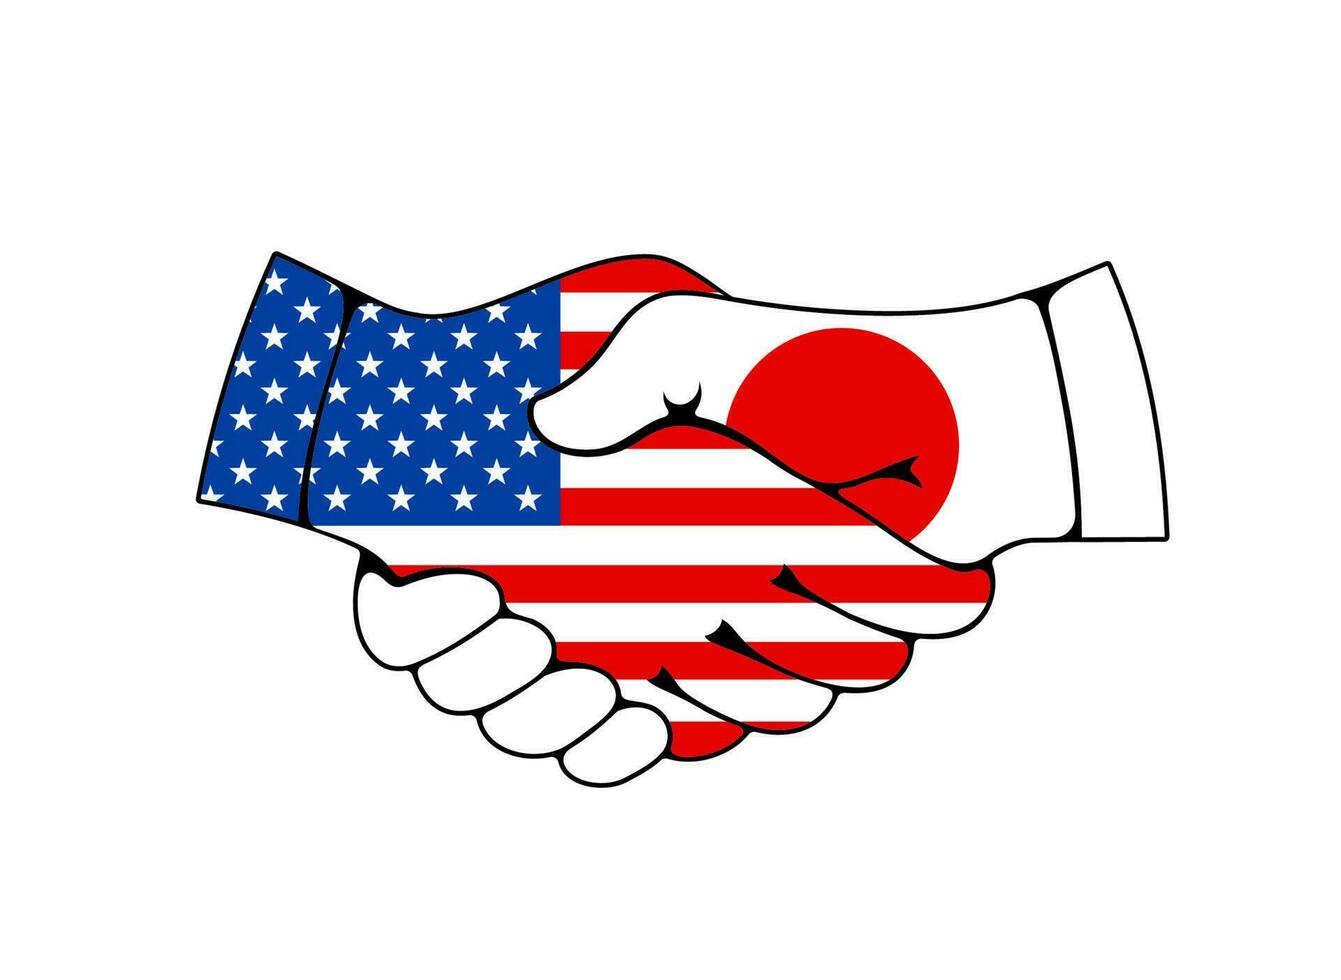 Verenigde Staten van Amerika en Japan handdruk, handel en bedrijf transactie vector